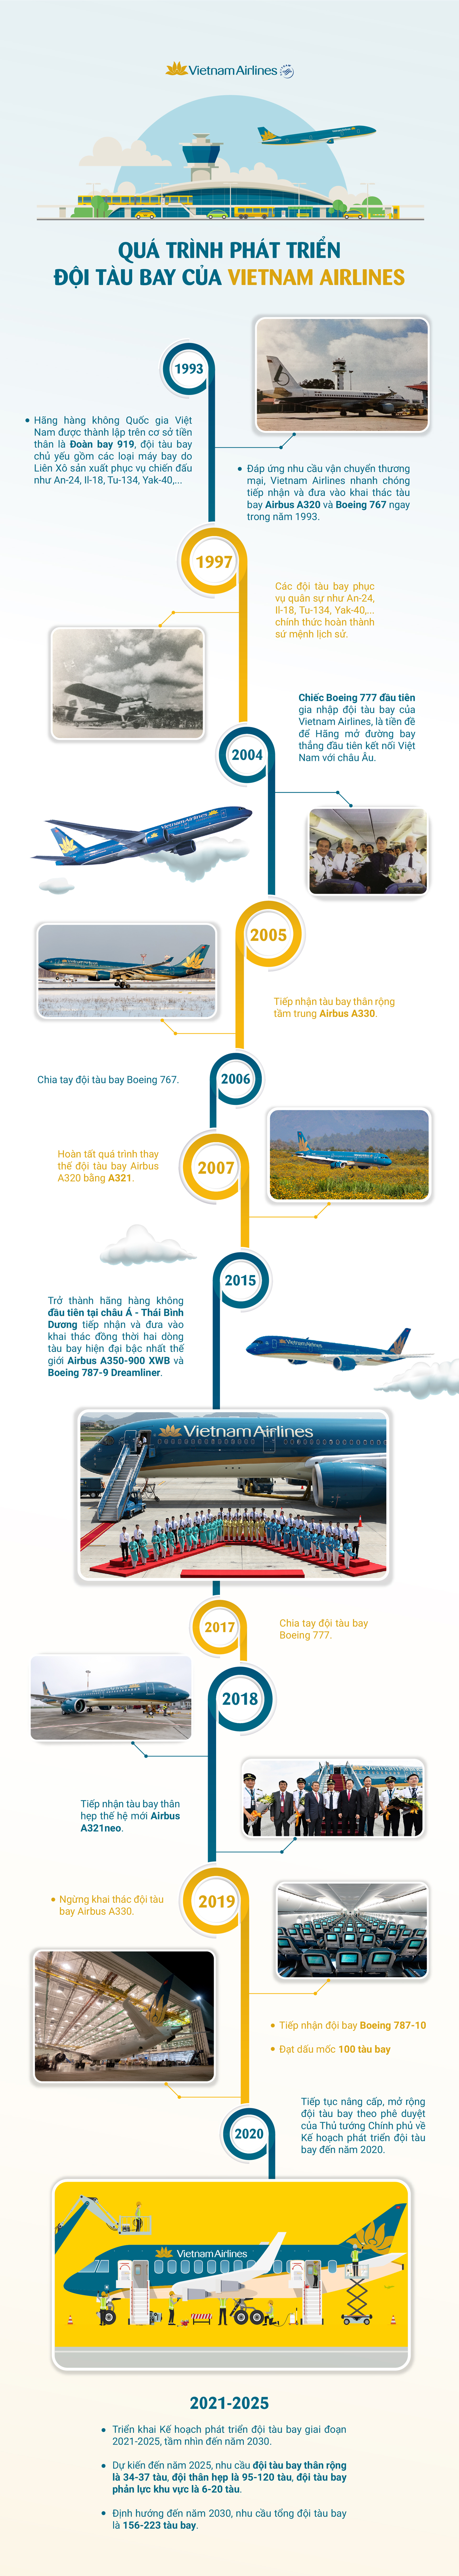 Lịch sử phát triển đội tàu bay VNAL